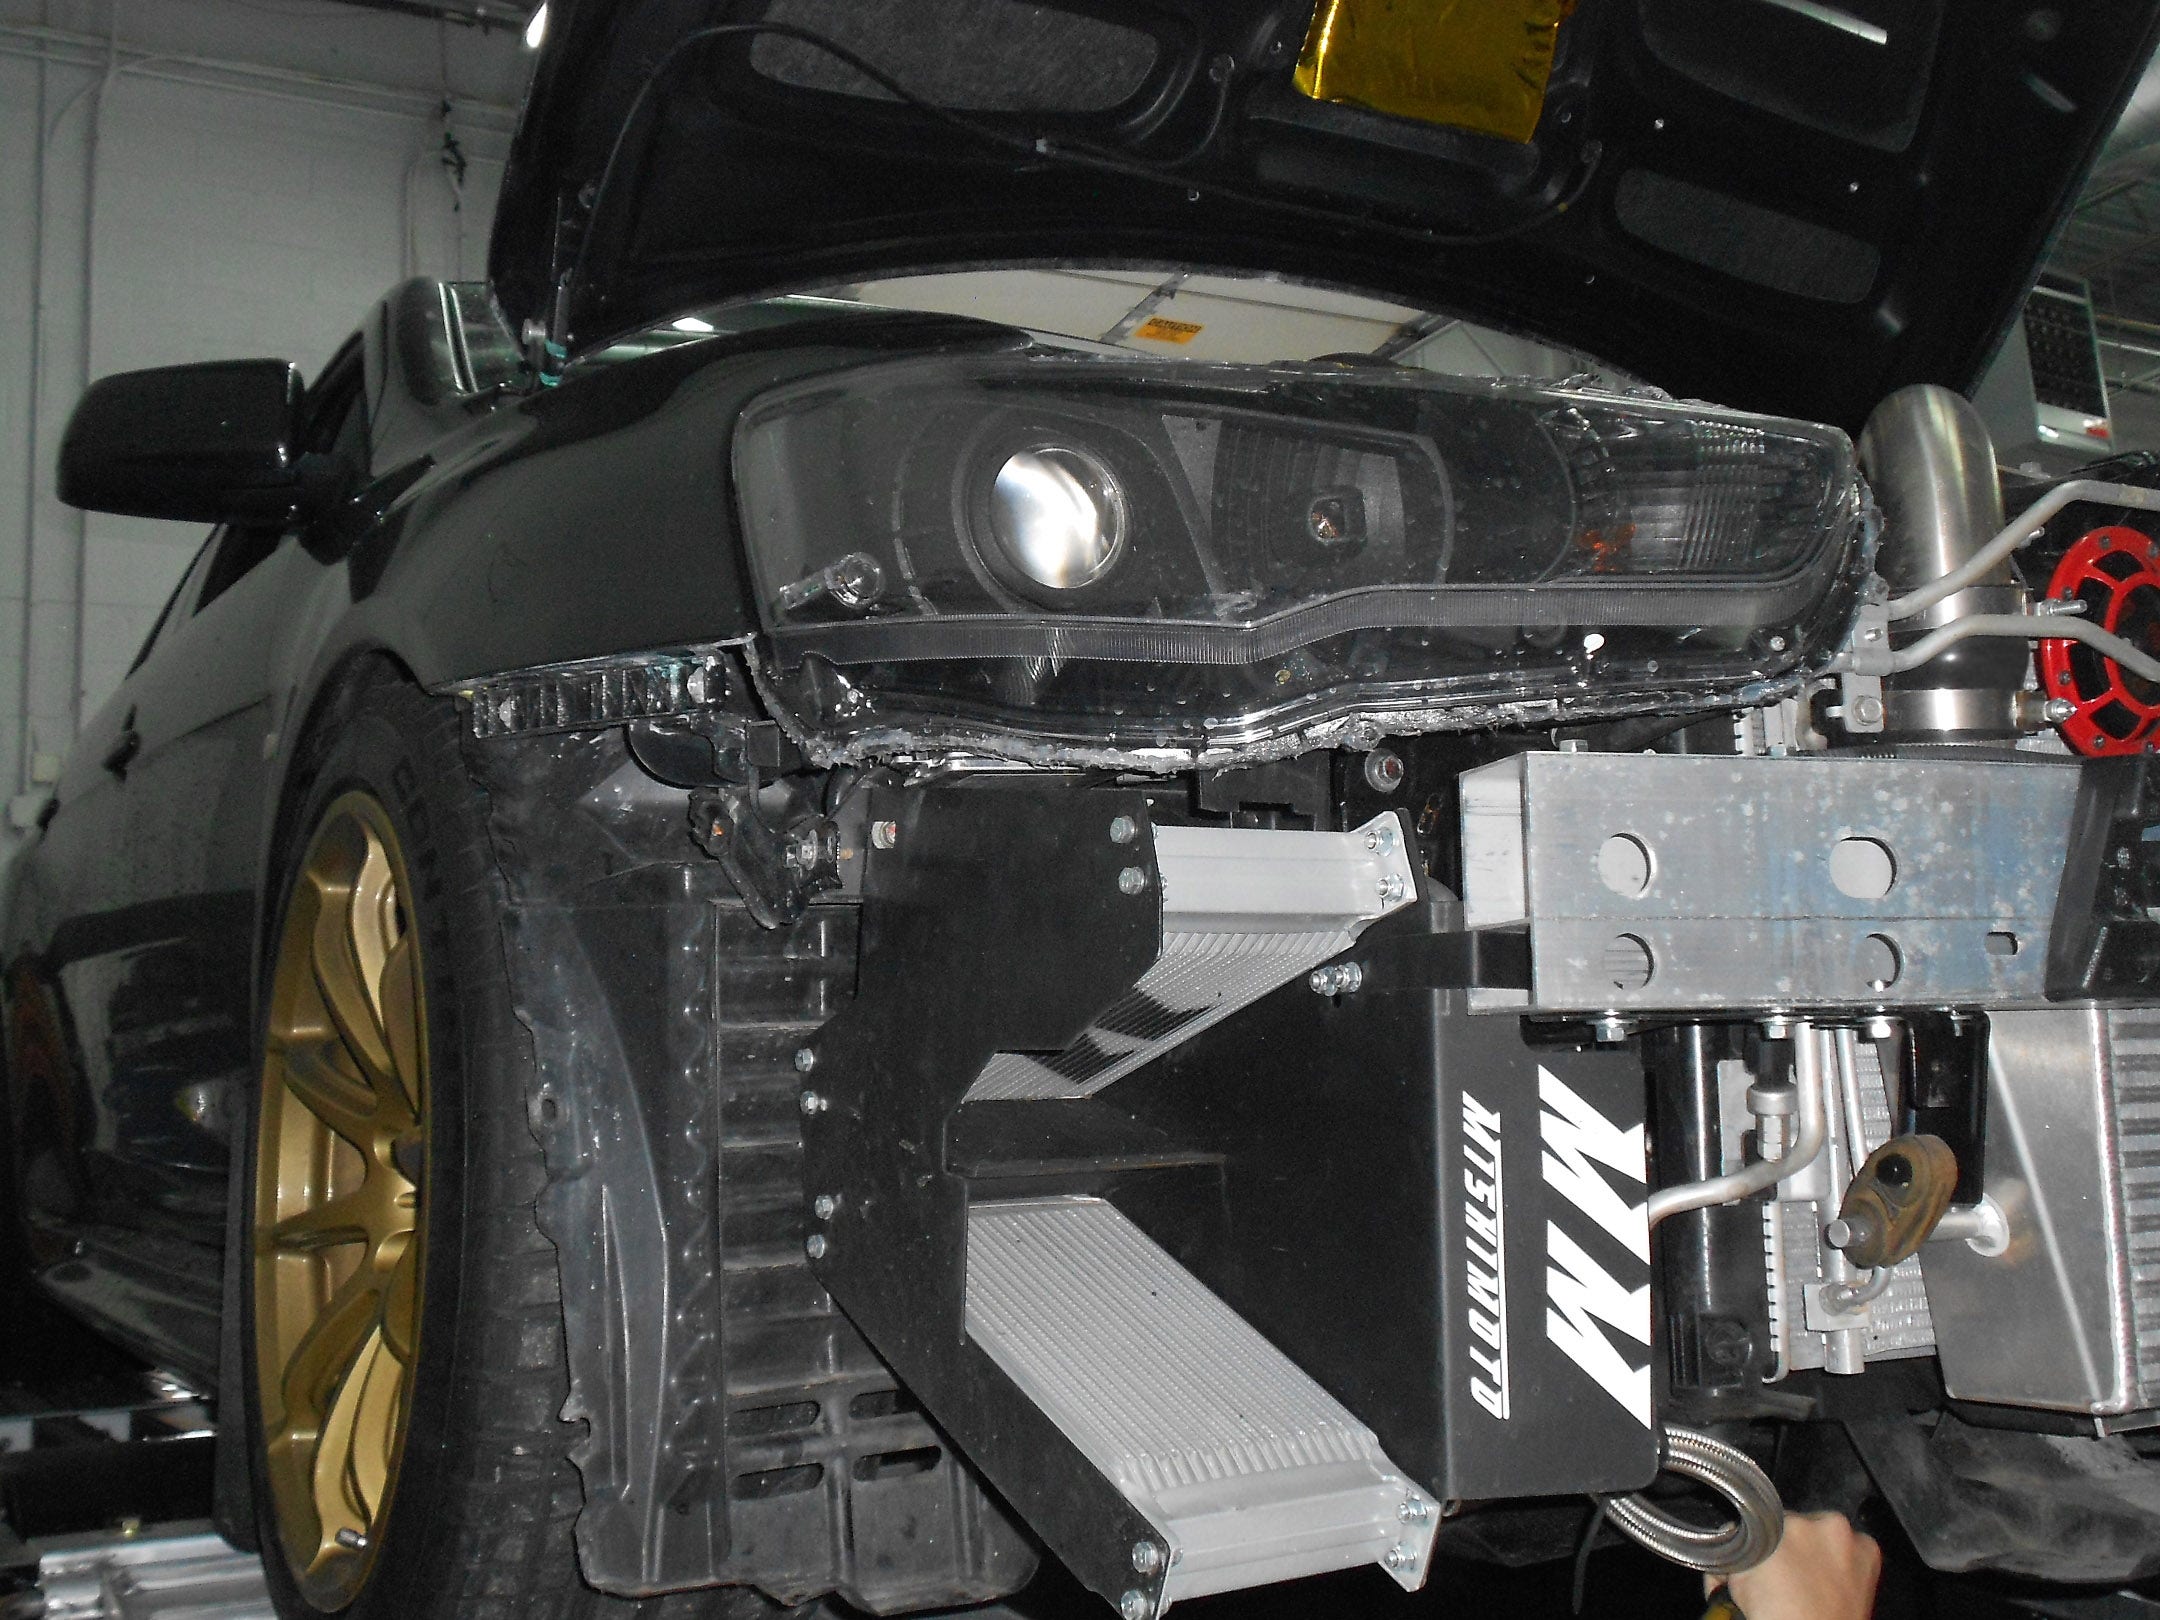 2008-2014 Mishimoto Lancer Evolution X Direct-Fit Oil Cooler Kit, Part 2: CAD Design and Product Testing